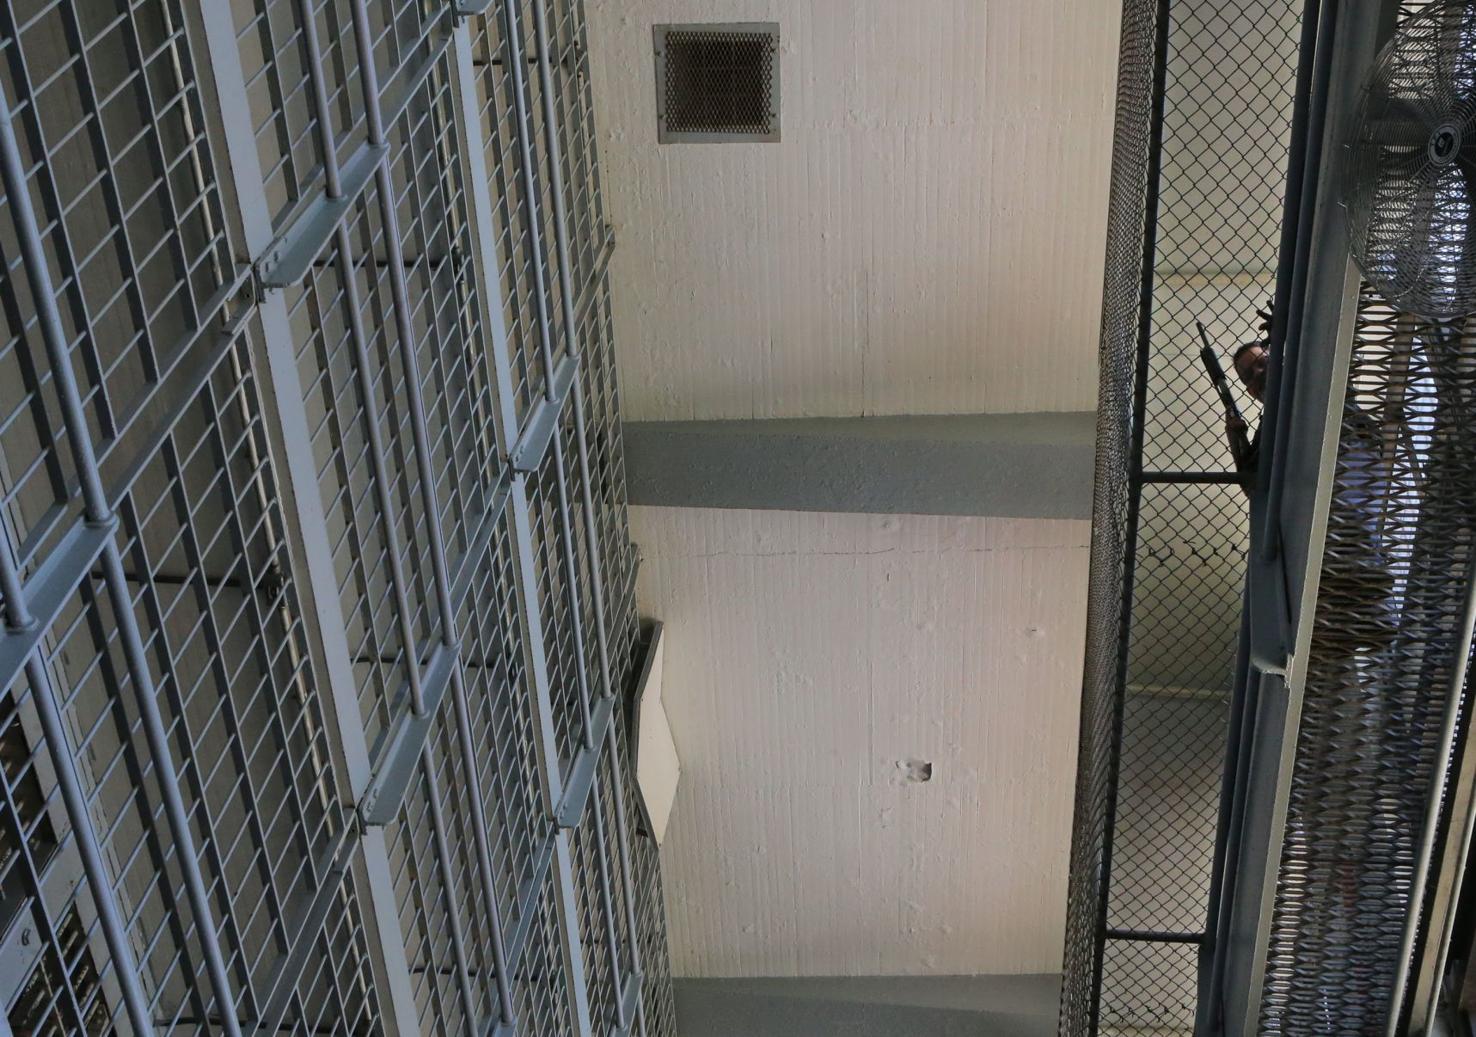 Life behind bars at Menard Correctional Center